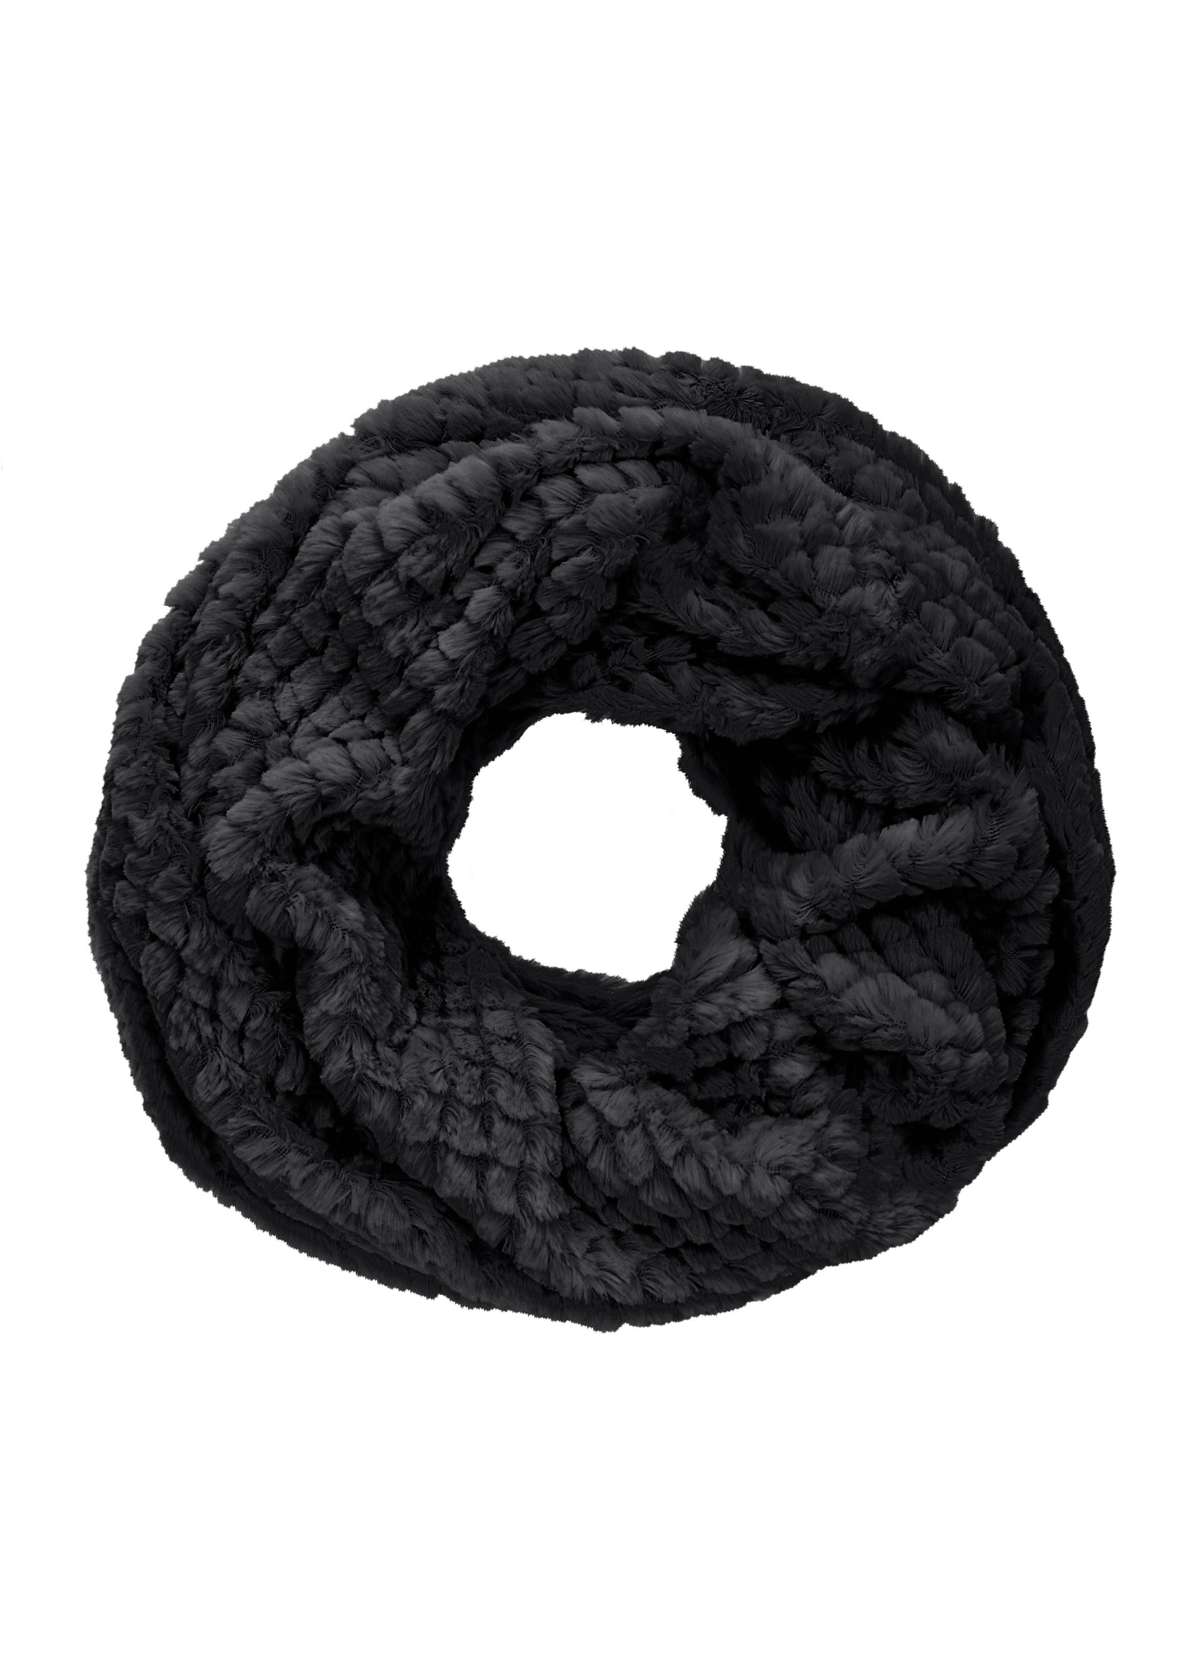 Петля, мягкий материал, объемный флисовый шарф, утеплитель для шеи VEGAN.